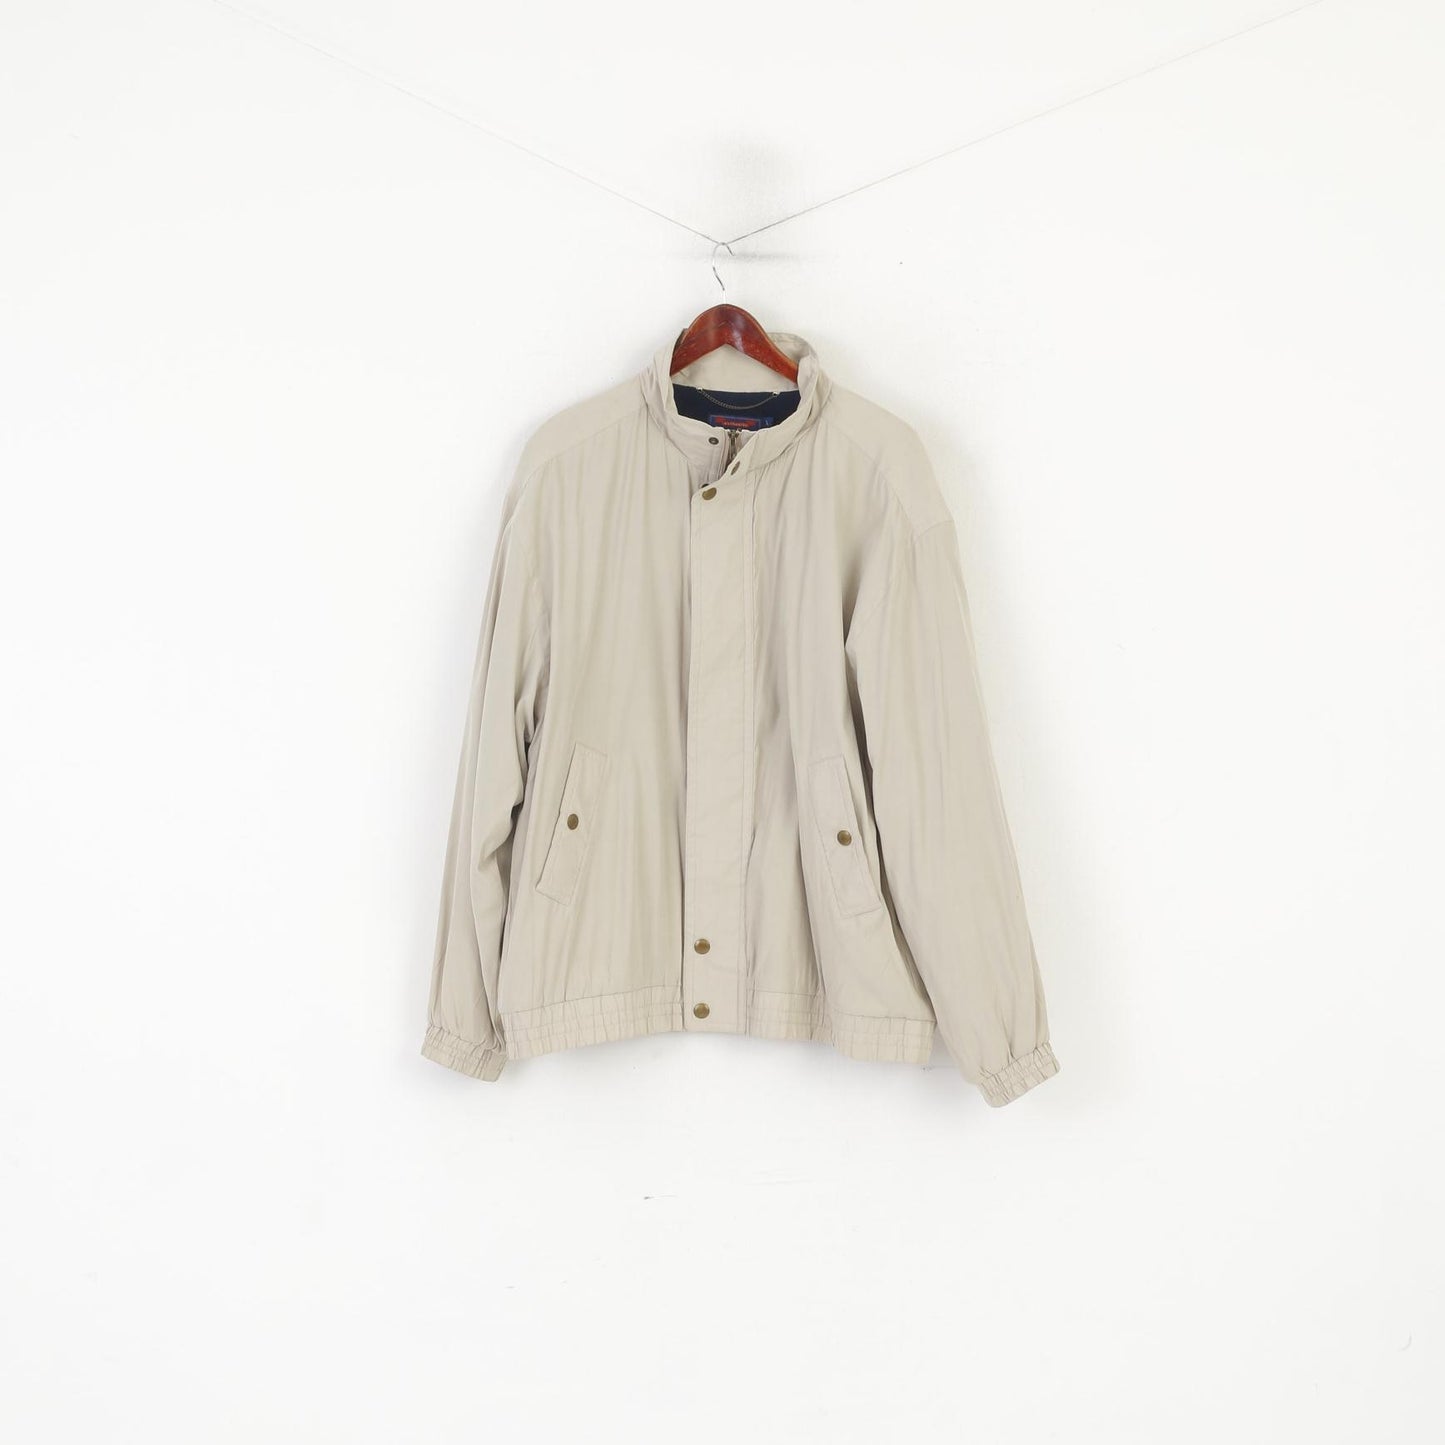 James Cowan Men L Jacket Beige Vintage Harrington Full Zip Fleece Lined Top